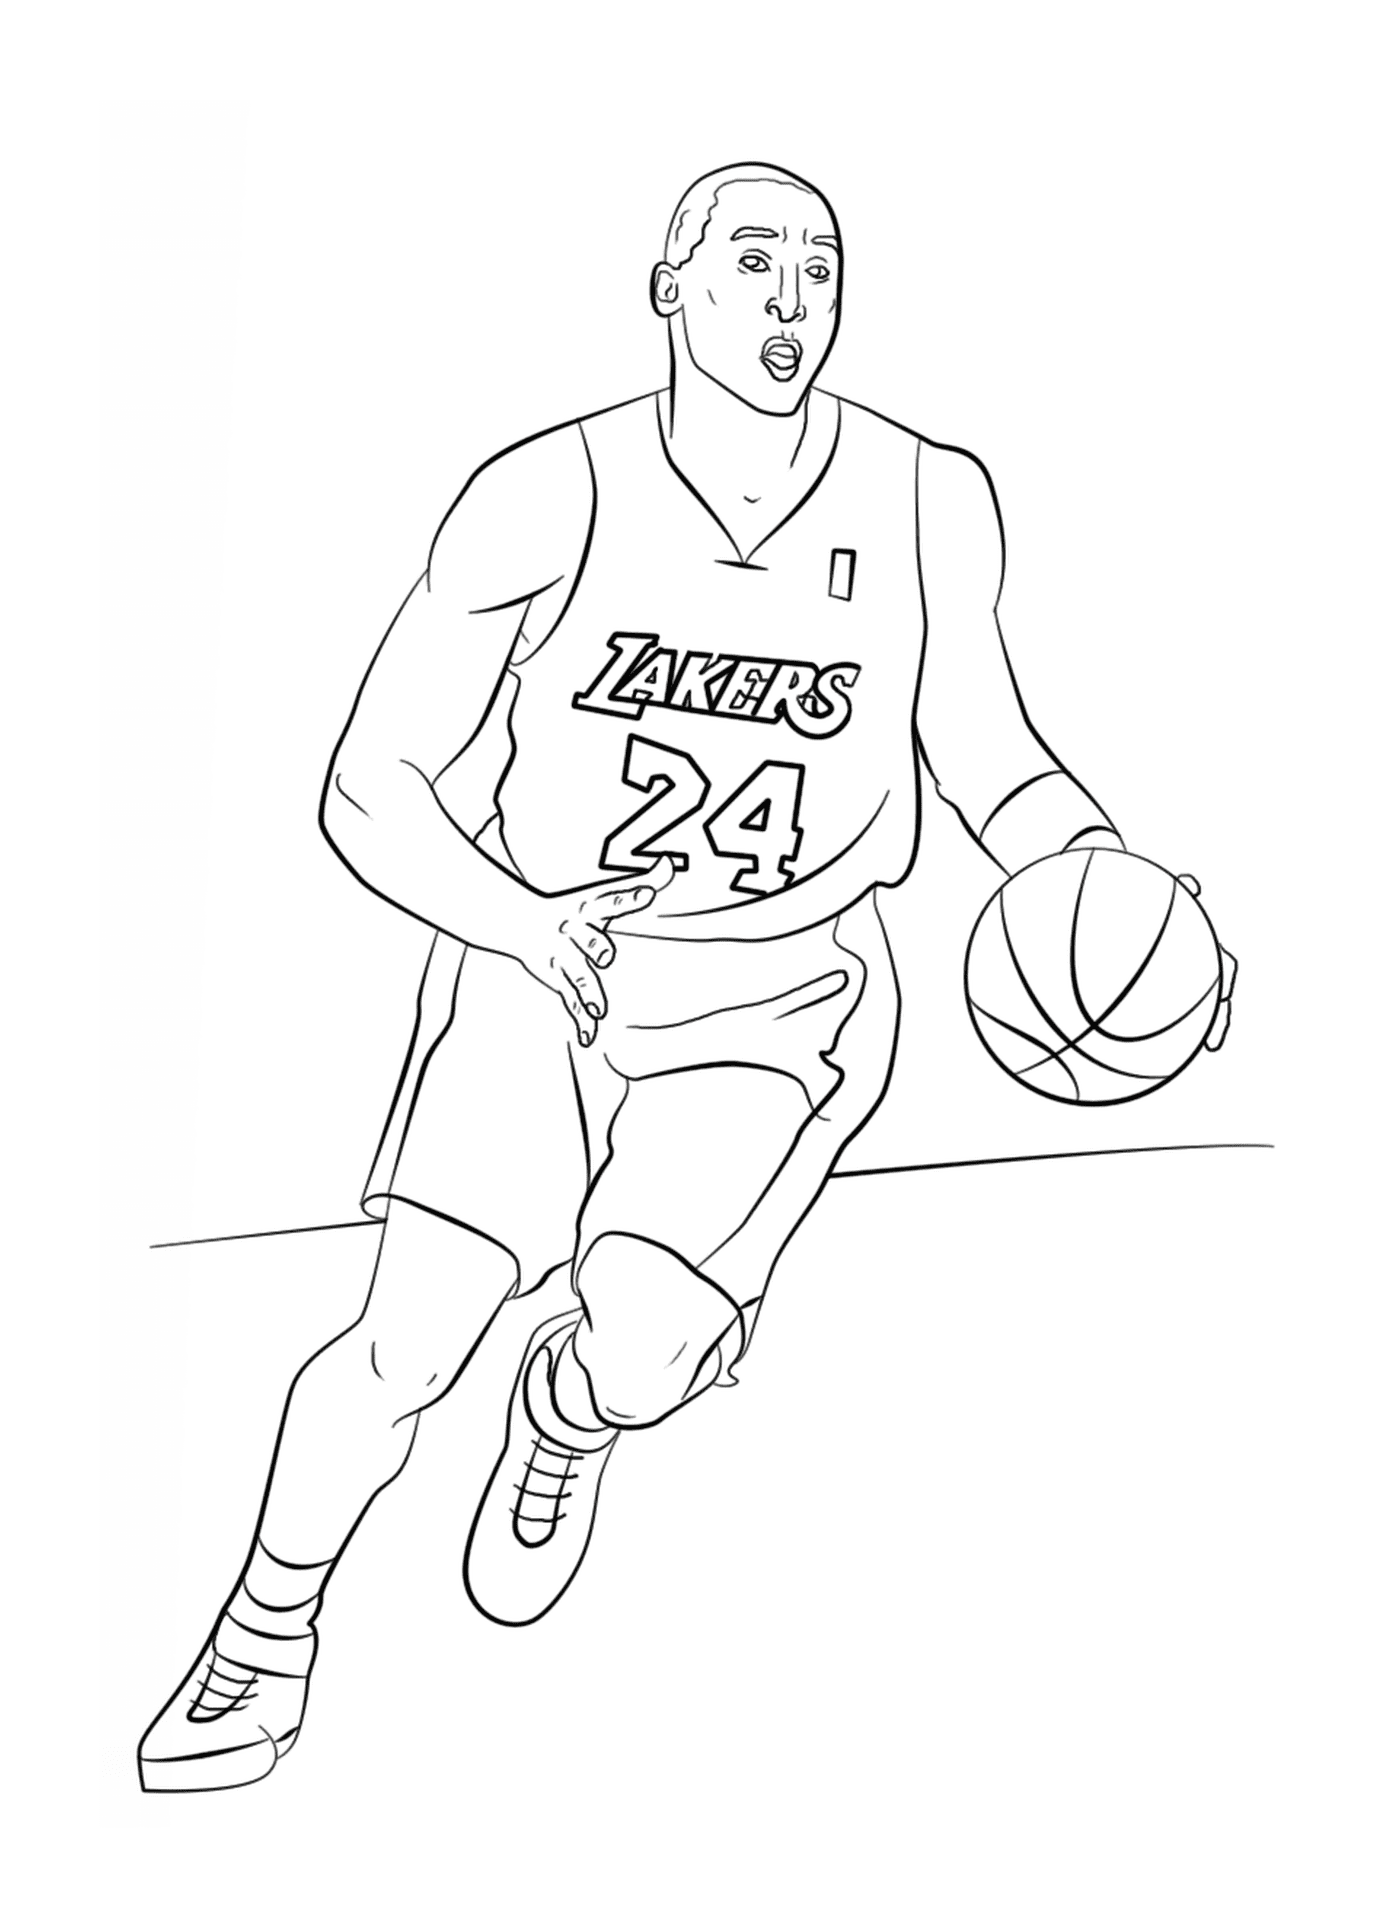  Kobe Bryant segura uma bola de basquete 